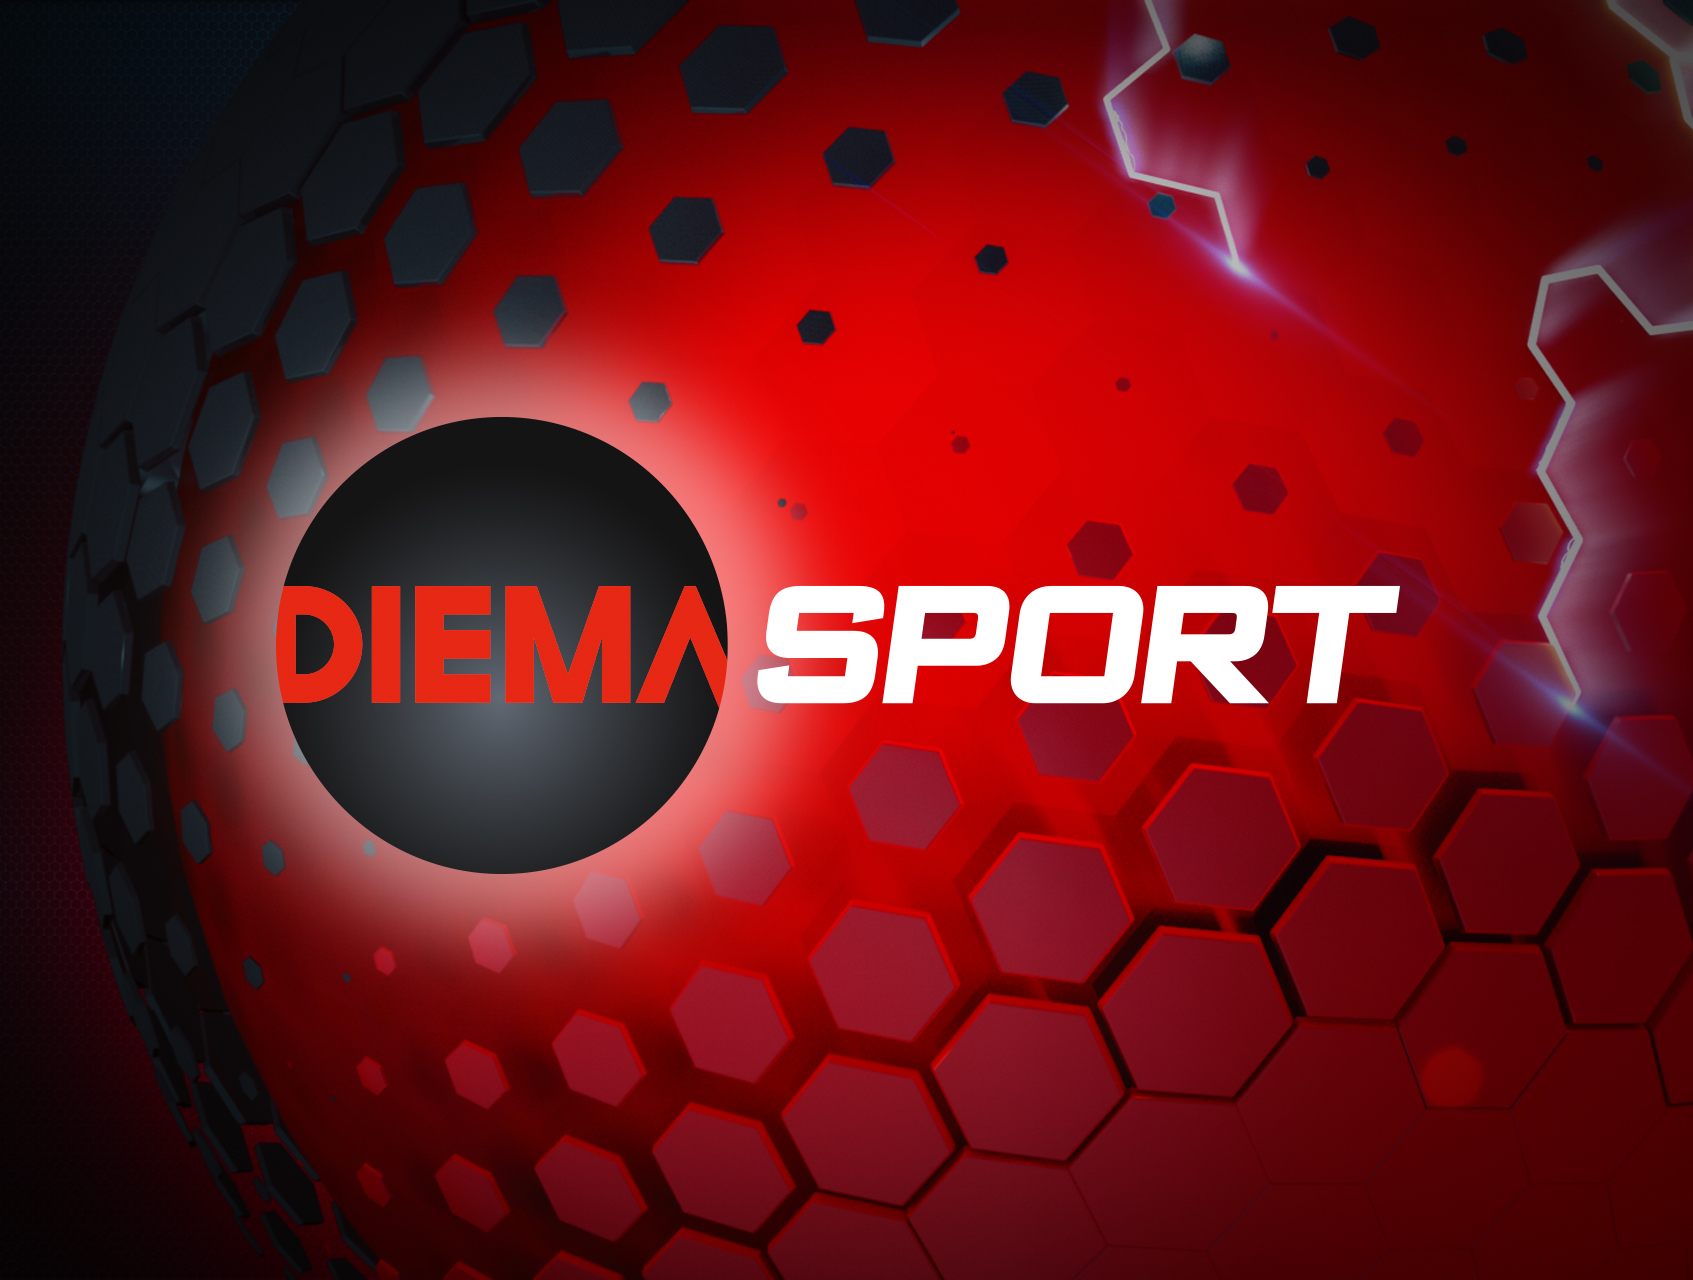 diema sport 3 livestream